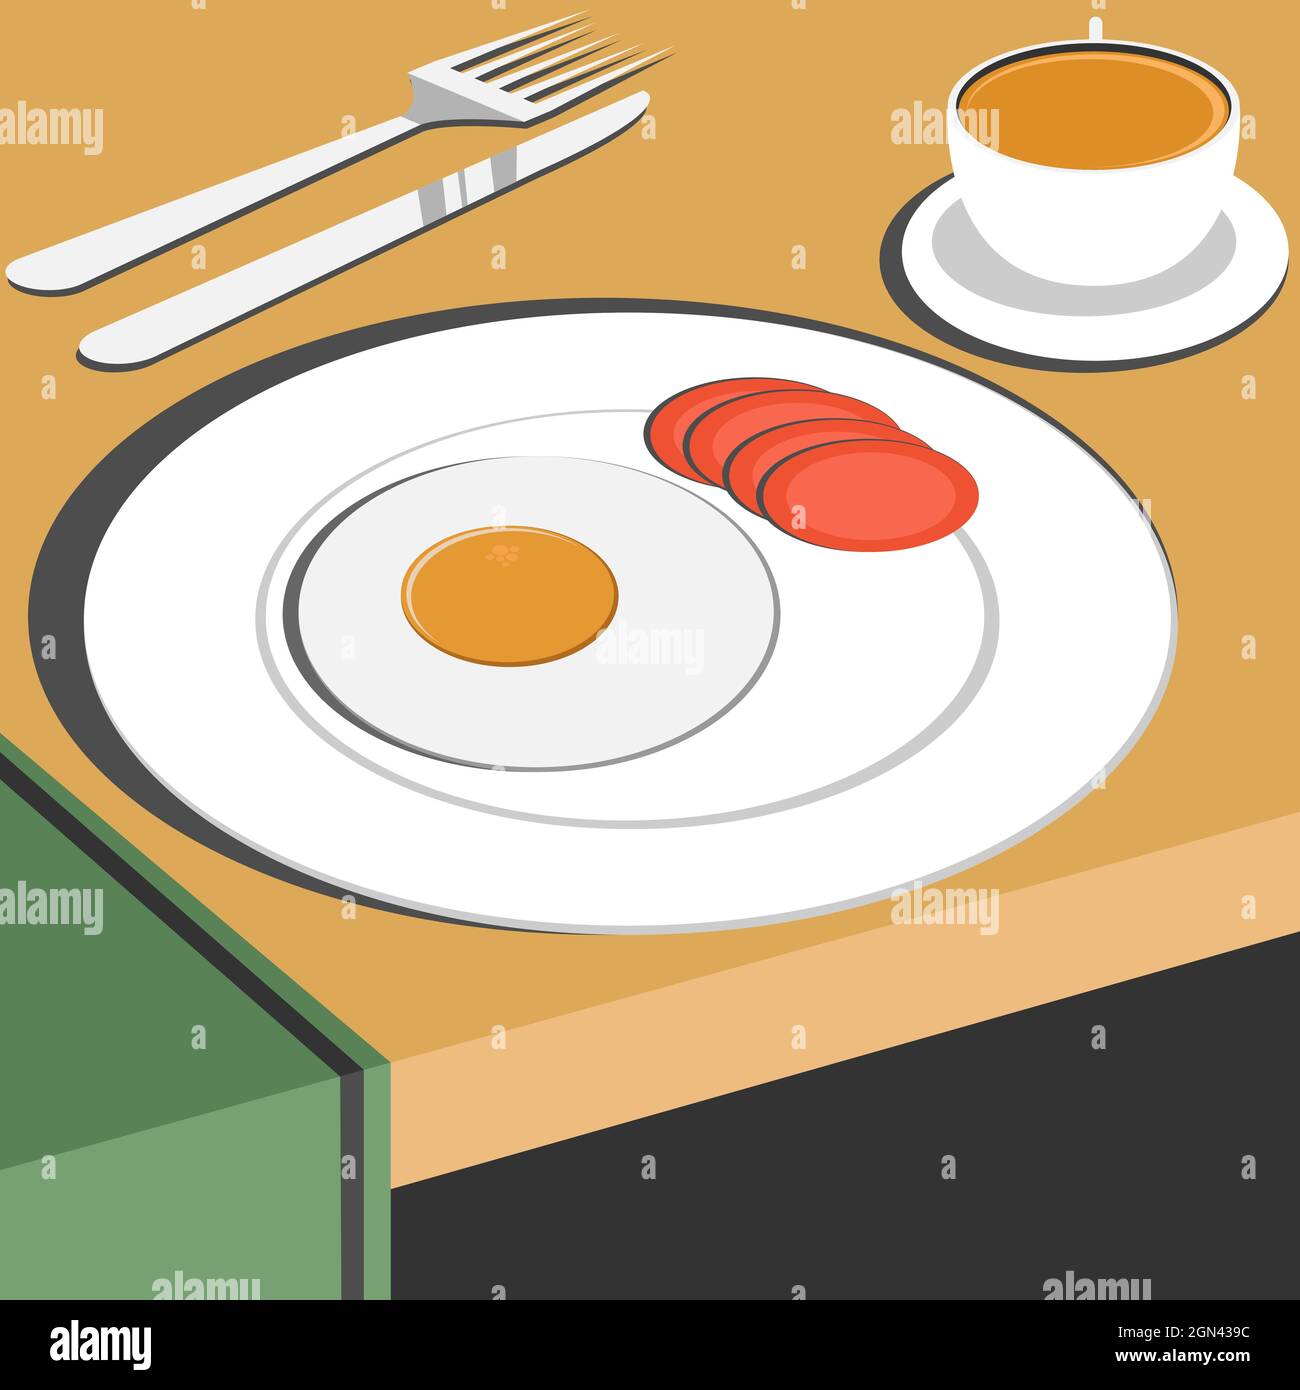 Illustrazione del disegno vettoriale delle uova fritte e della tazza di caffè in stile retrò Illustrazione Vettoriale